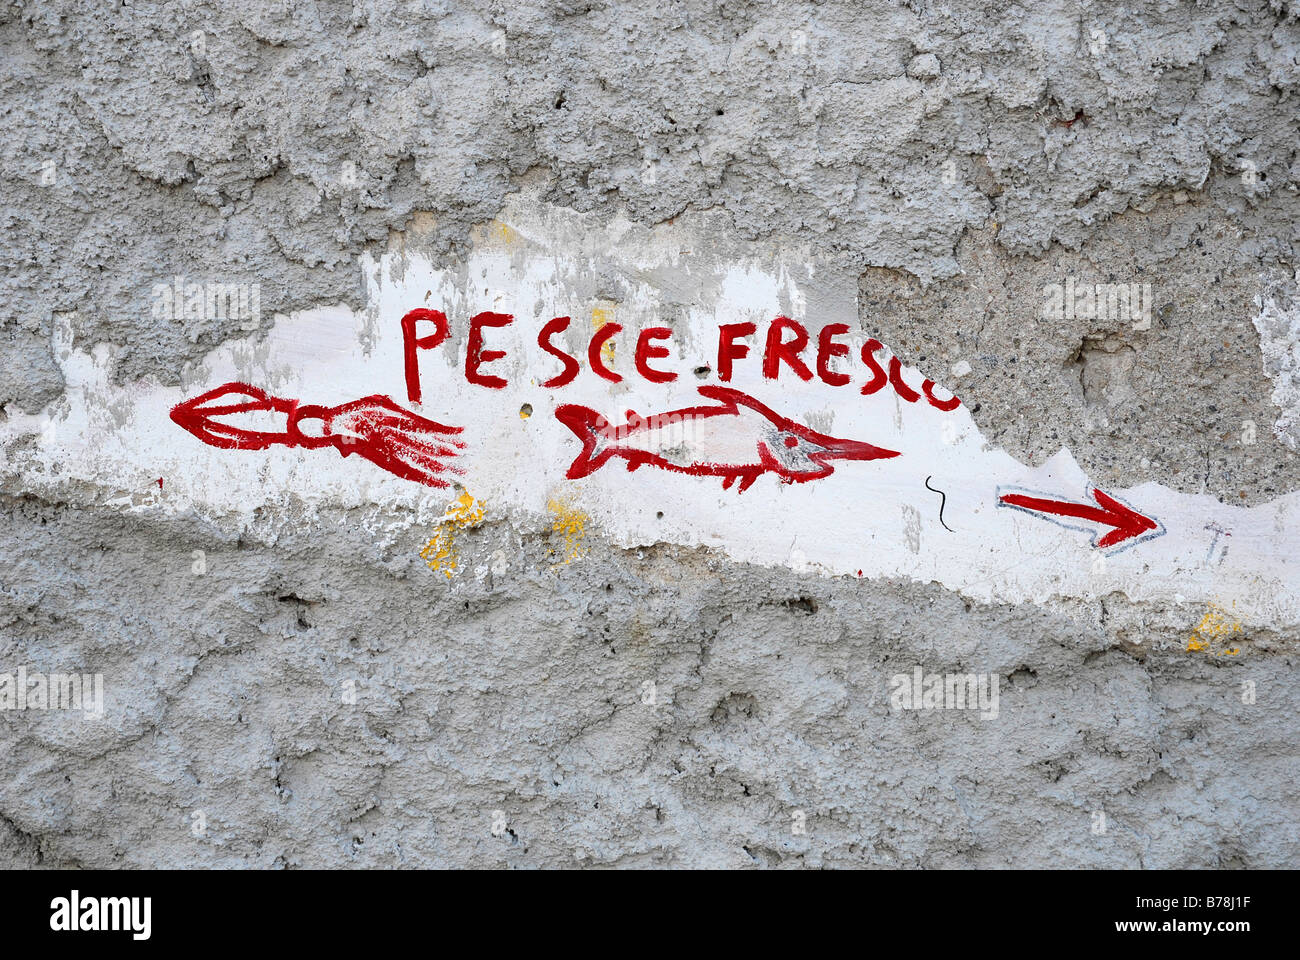 Graffiti rouge sur un mur gris, pesce fresco, poisson frais, la publicité pour un poisson shop dans la ville de Lipari sur l'île de Lipari, l'Aeol Banque D'Images